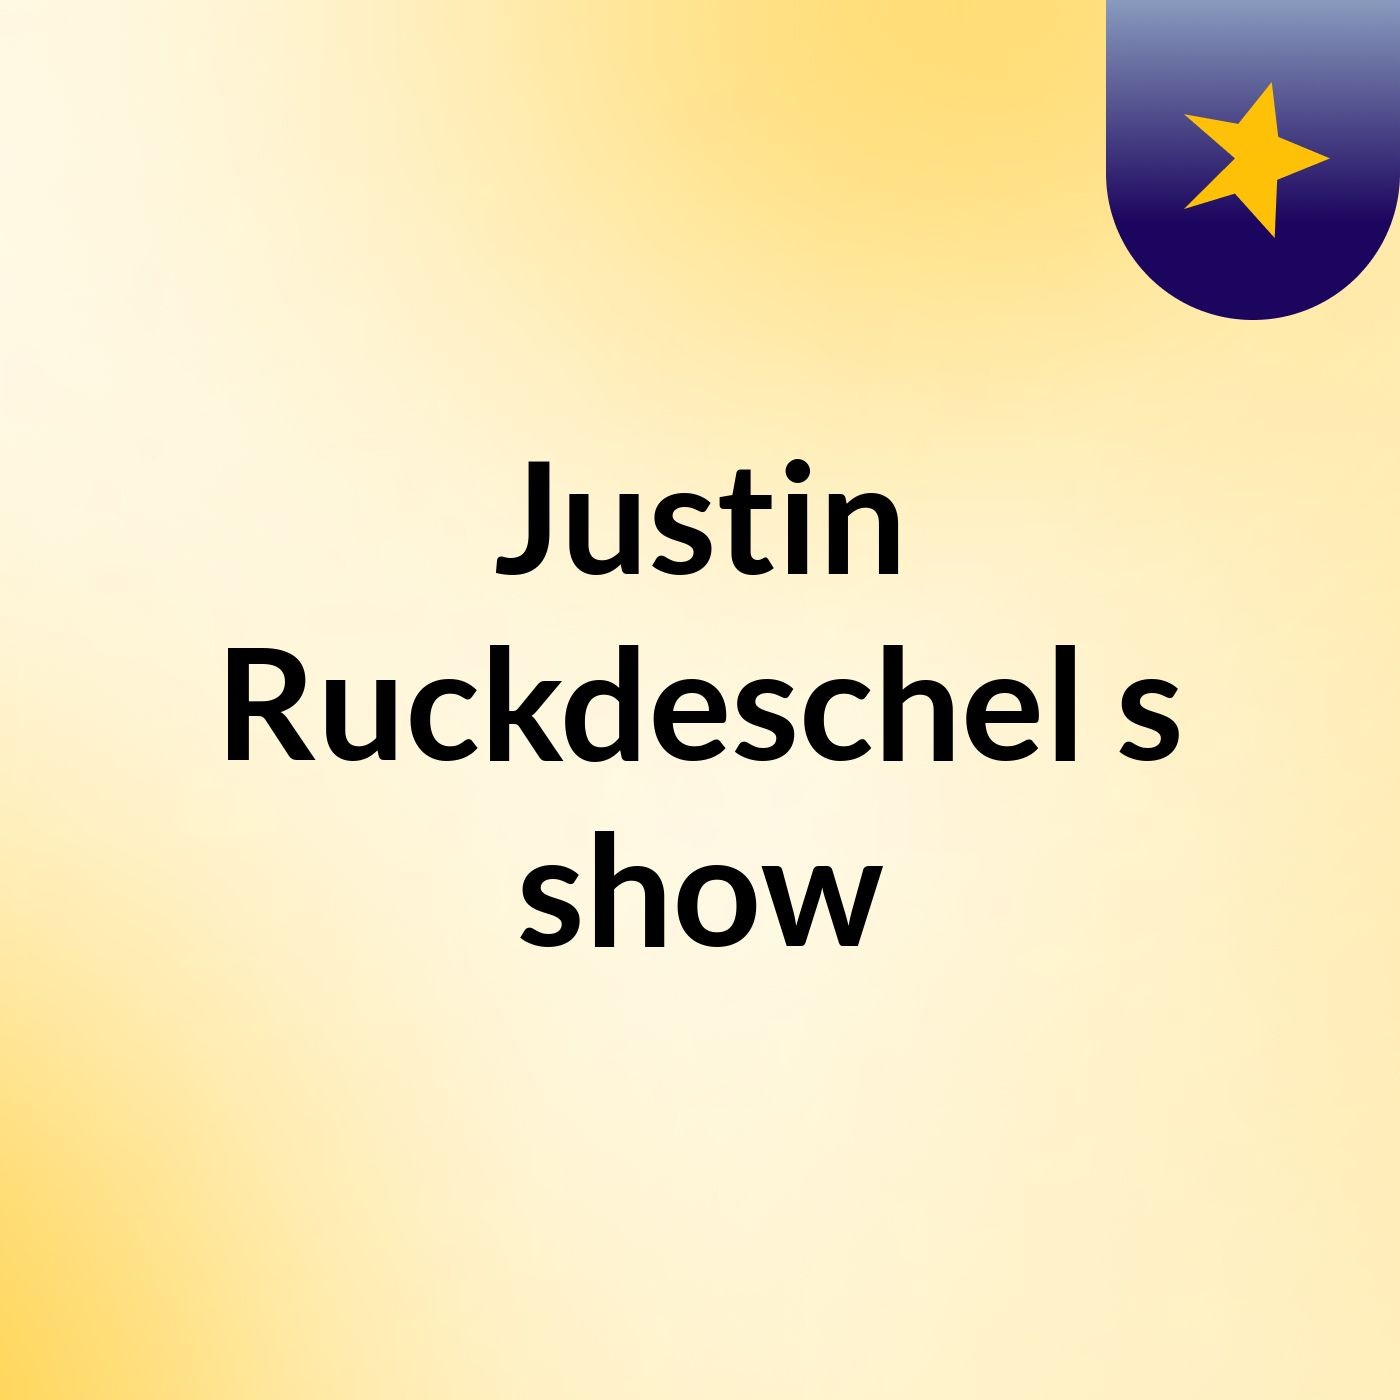 Justin Ruckdeschel's show